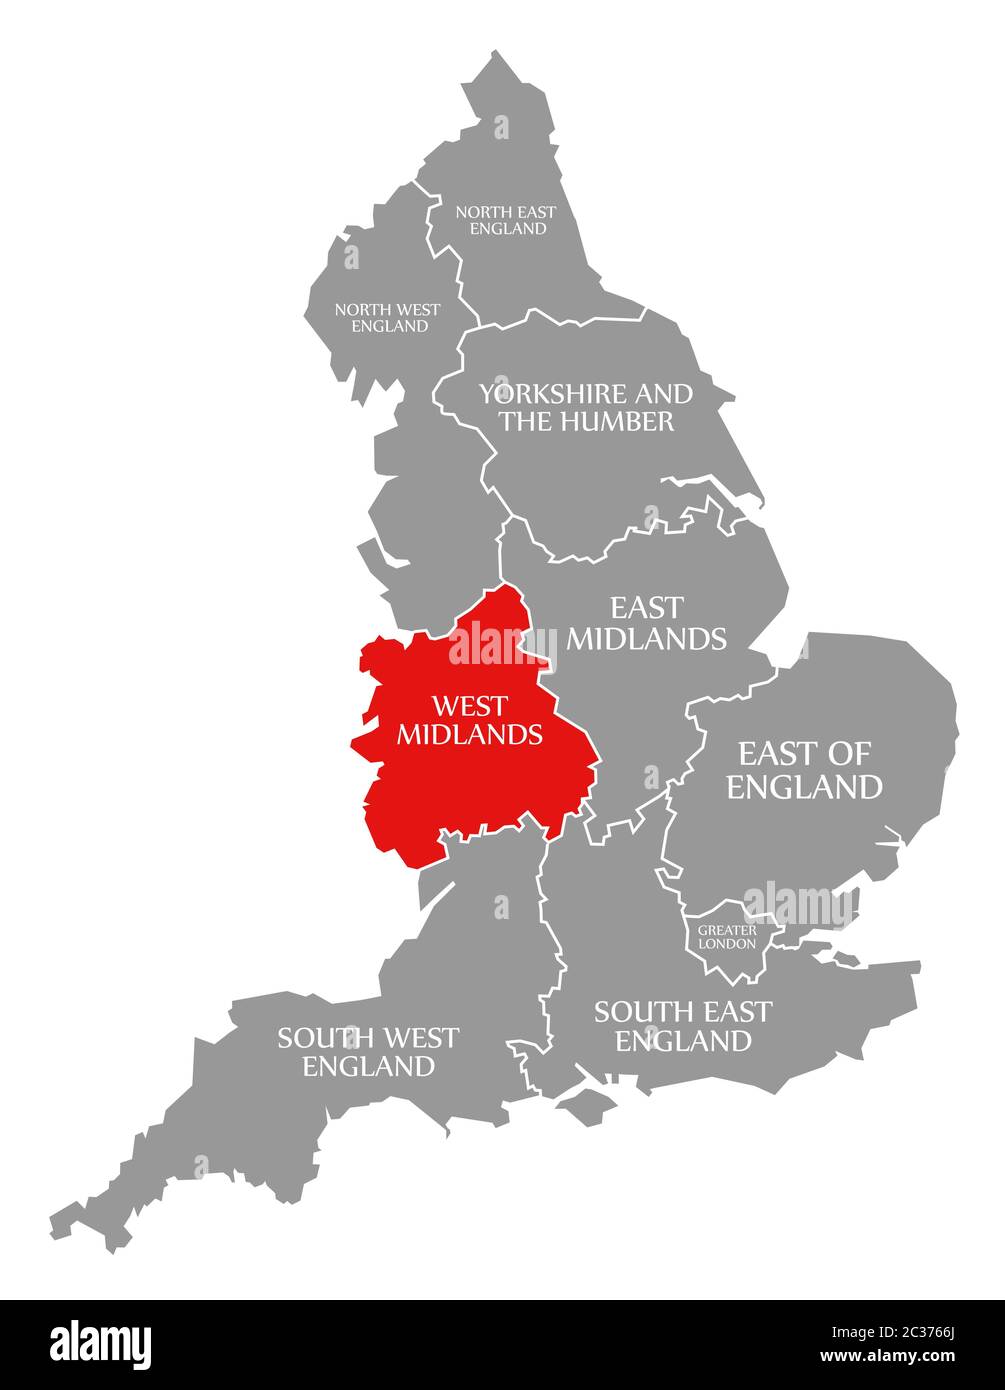 West Midlands resaltada en rojo en el mapa de Inglaterra Foto de stock